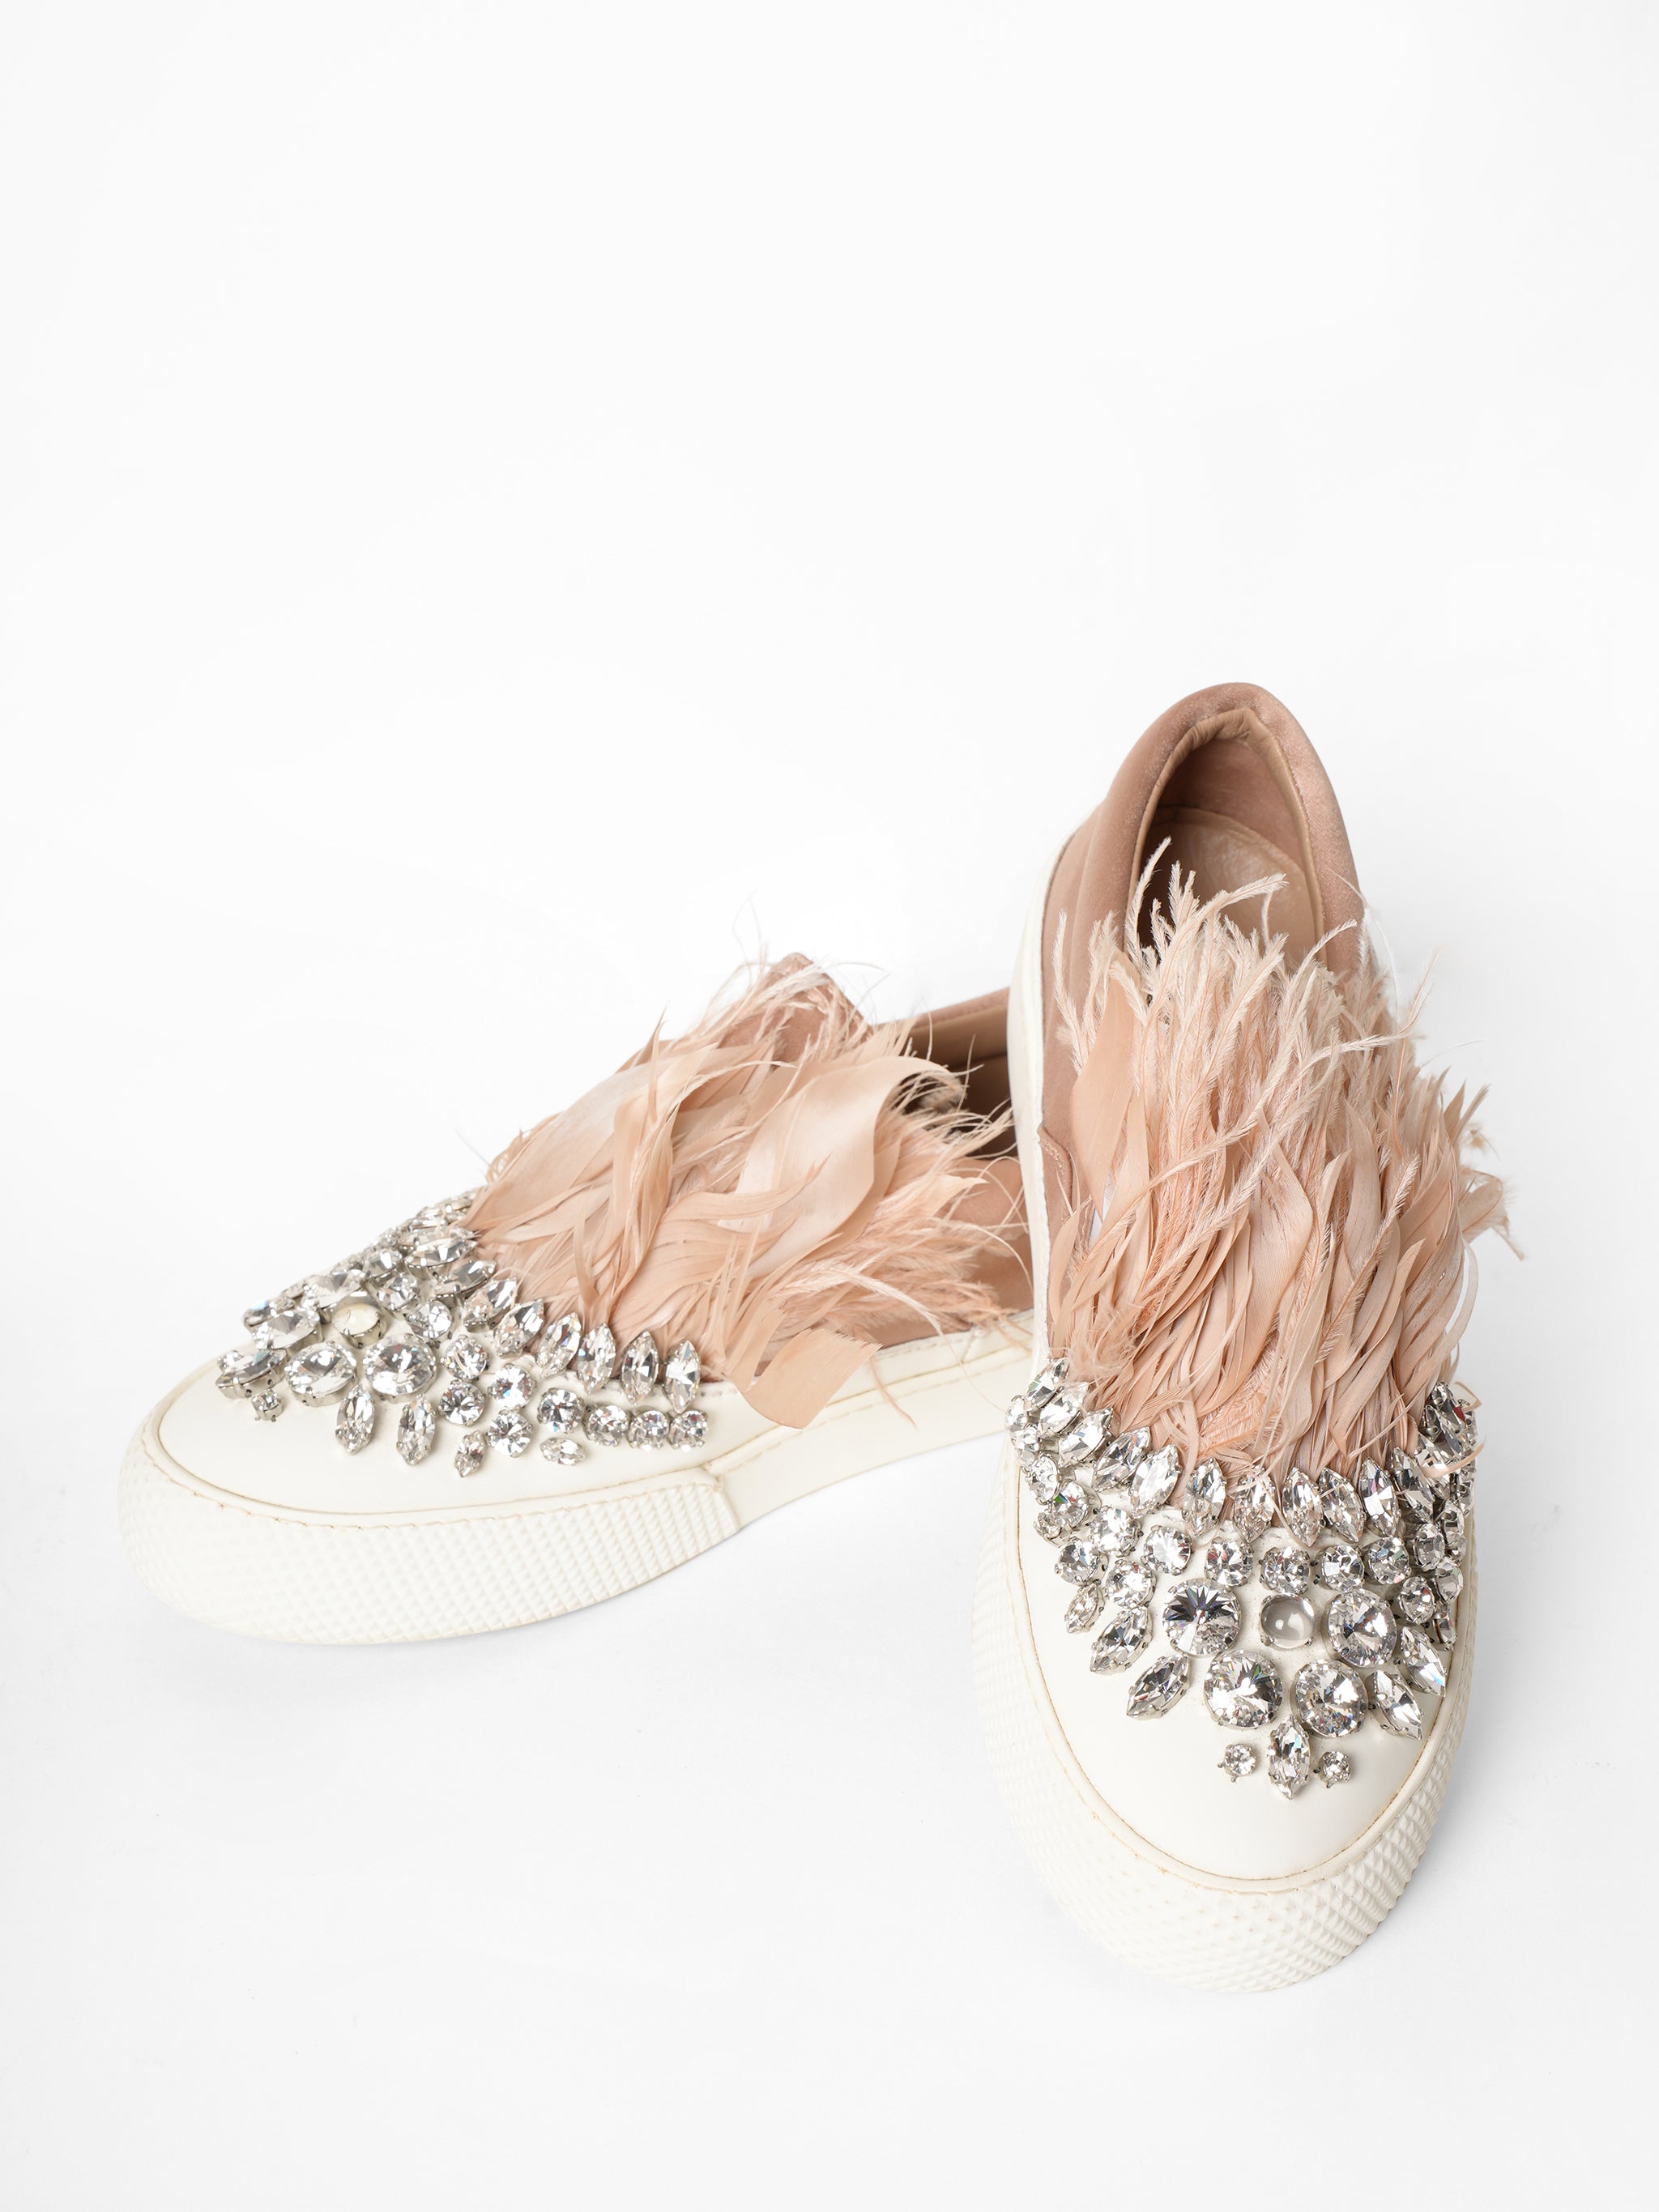 Miu Miu Sneakers In Satin With Rhinestones & Feather